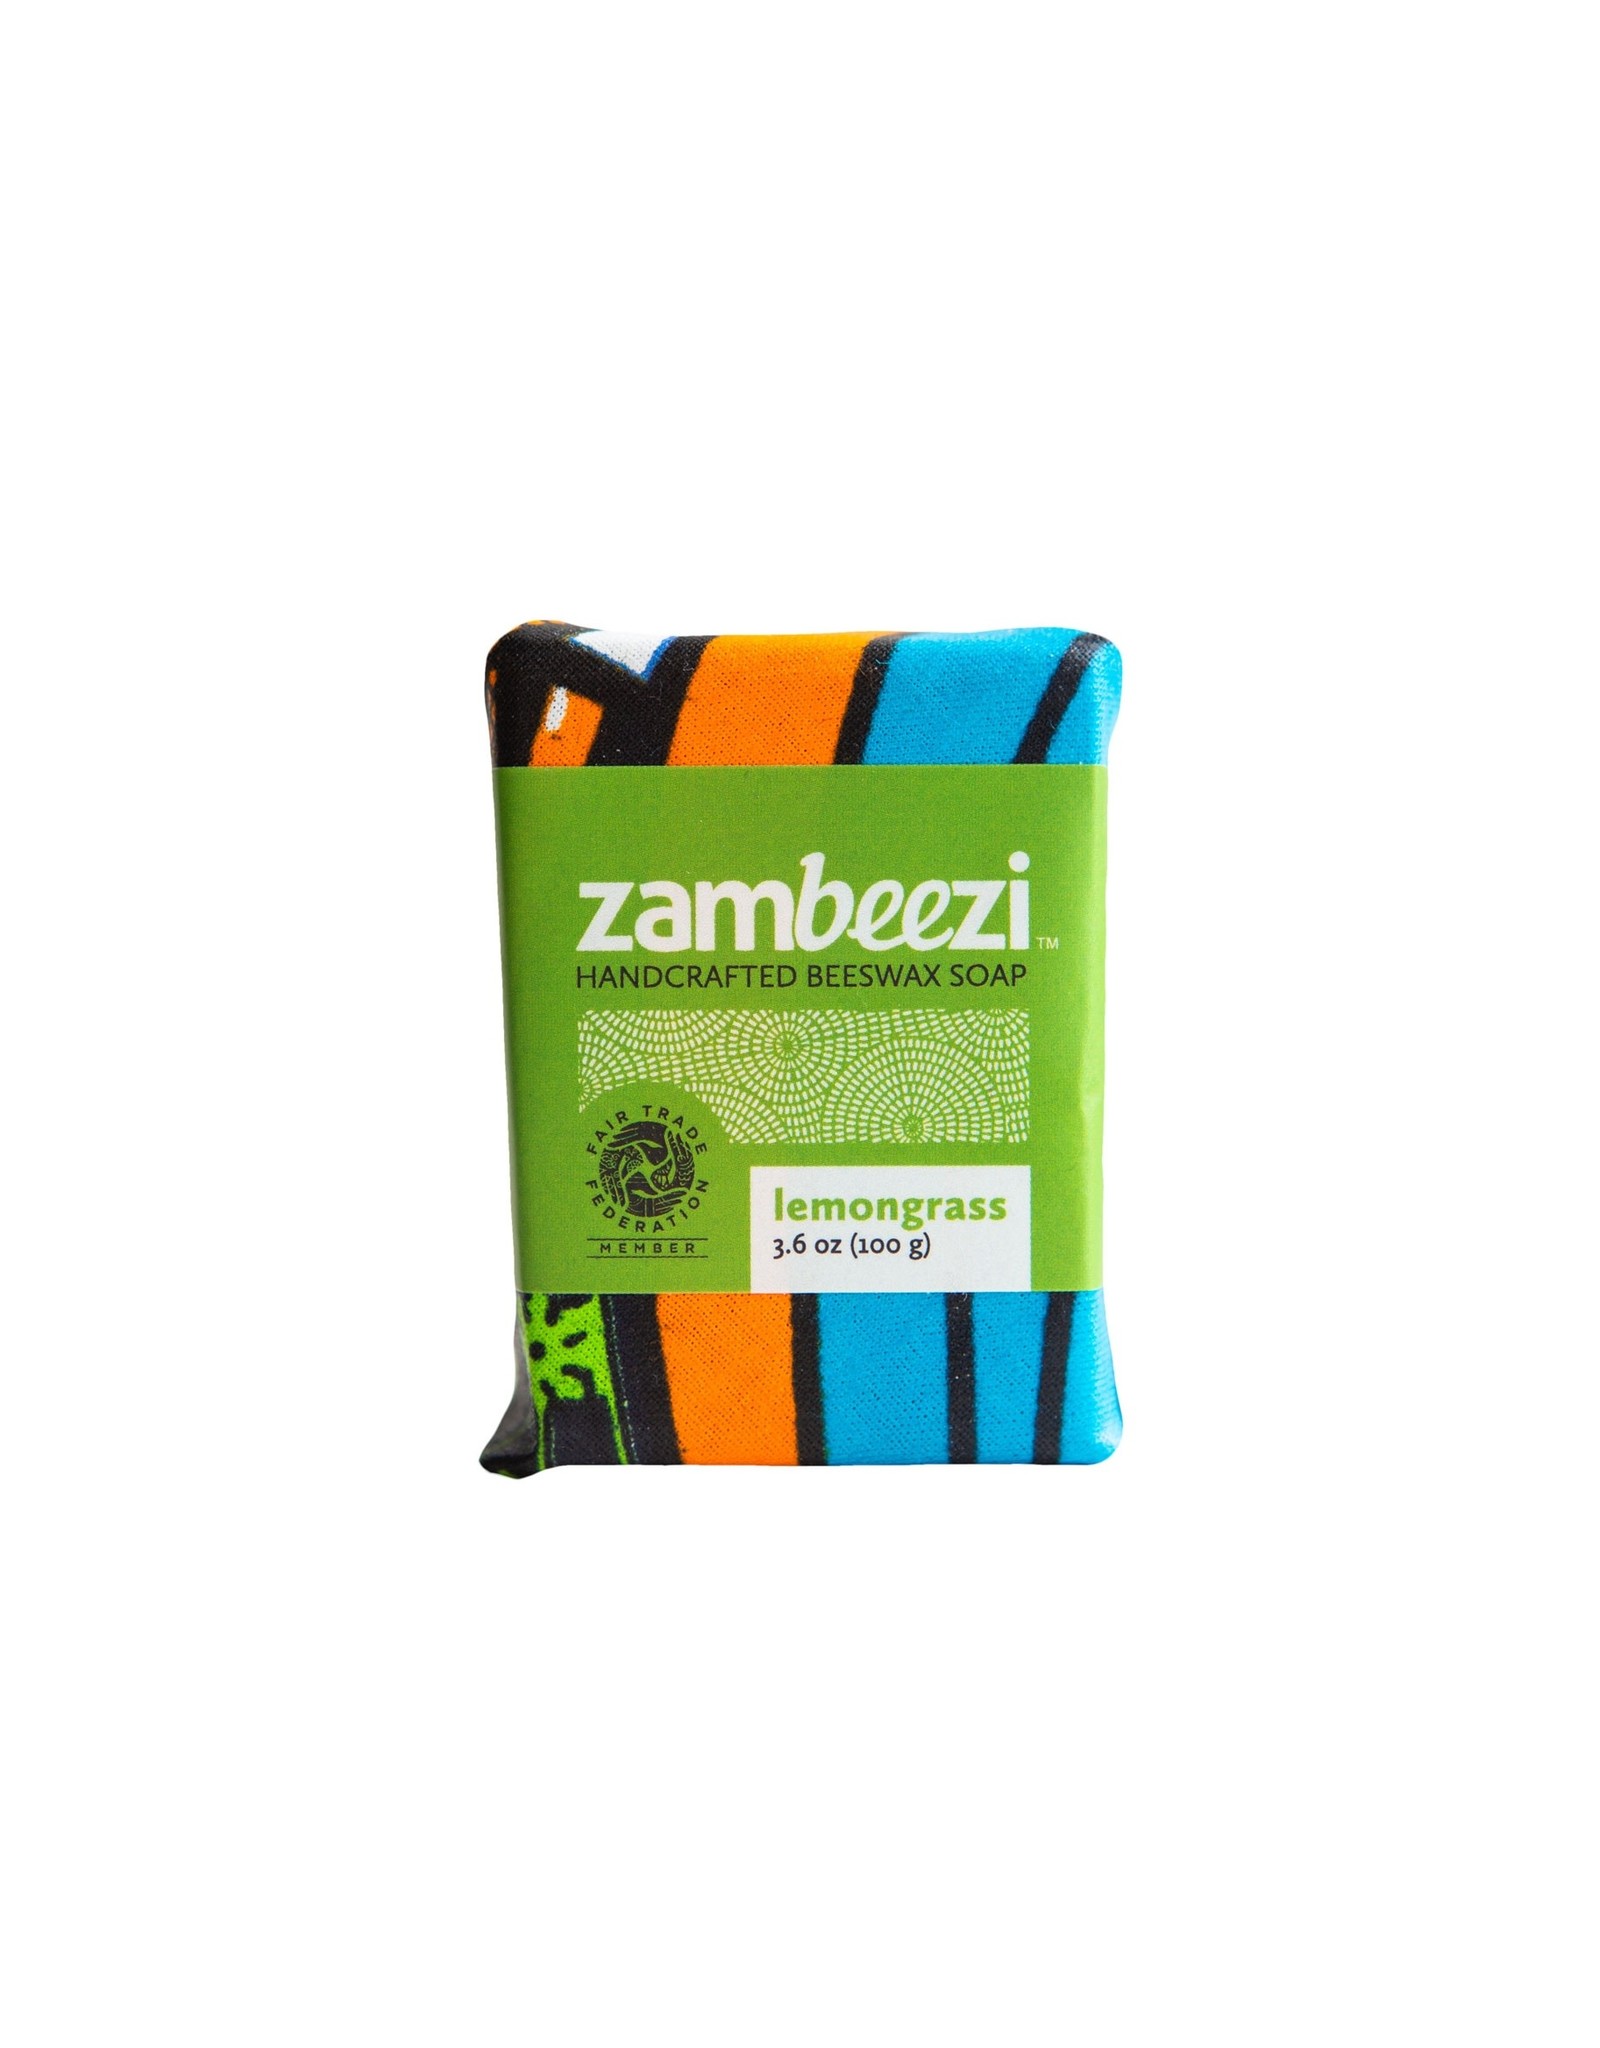 Zambia Beeswax Soap 100g, Zambia